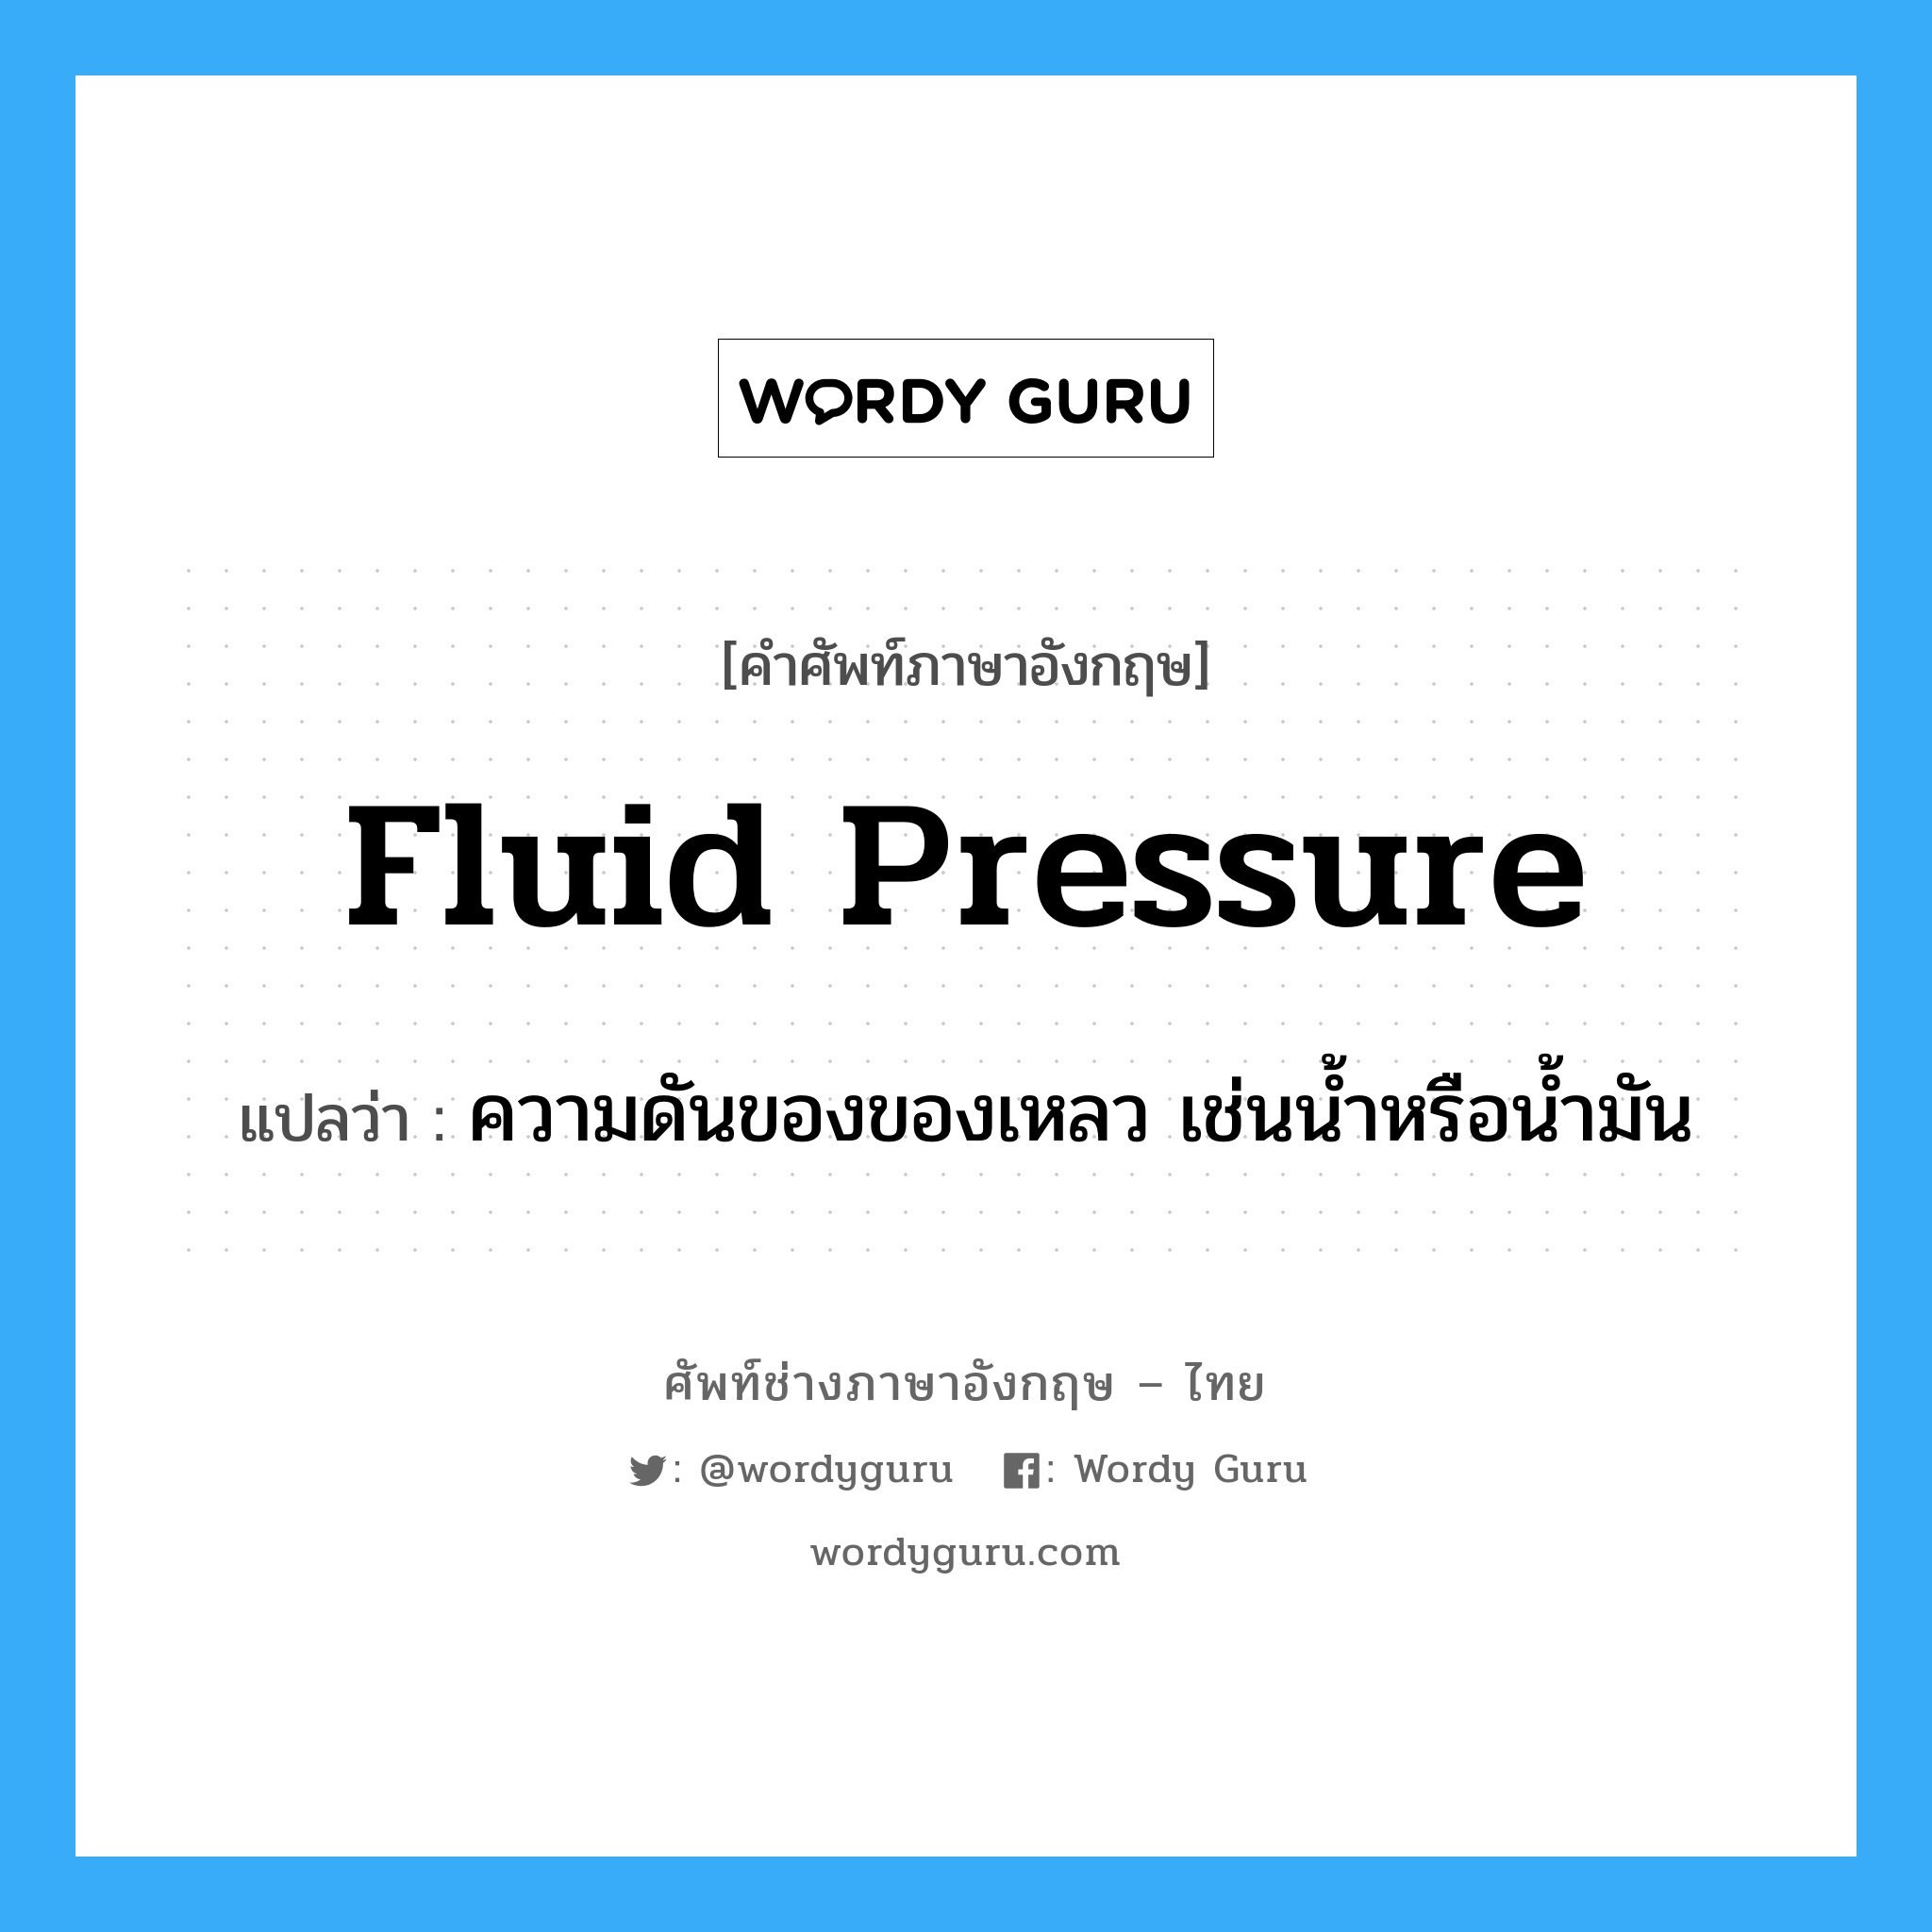 ความดันของของเหลว เช่นน้ำหรือน้ำมัน ภาษาอังกฤษ?, คำศัพท์ช่างภาษาอังกฤษ - ไทย ความดันของของเหลว เช่นน้ำหรือน้ำมัน คำศัพท์ภาษาอังกฤษ ความดันของของเหลว เช่นน้ำหรือน้ำมัน แปลว่า fluid pressure